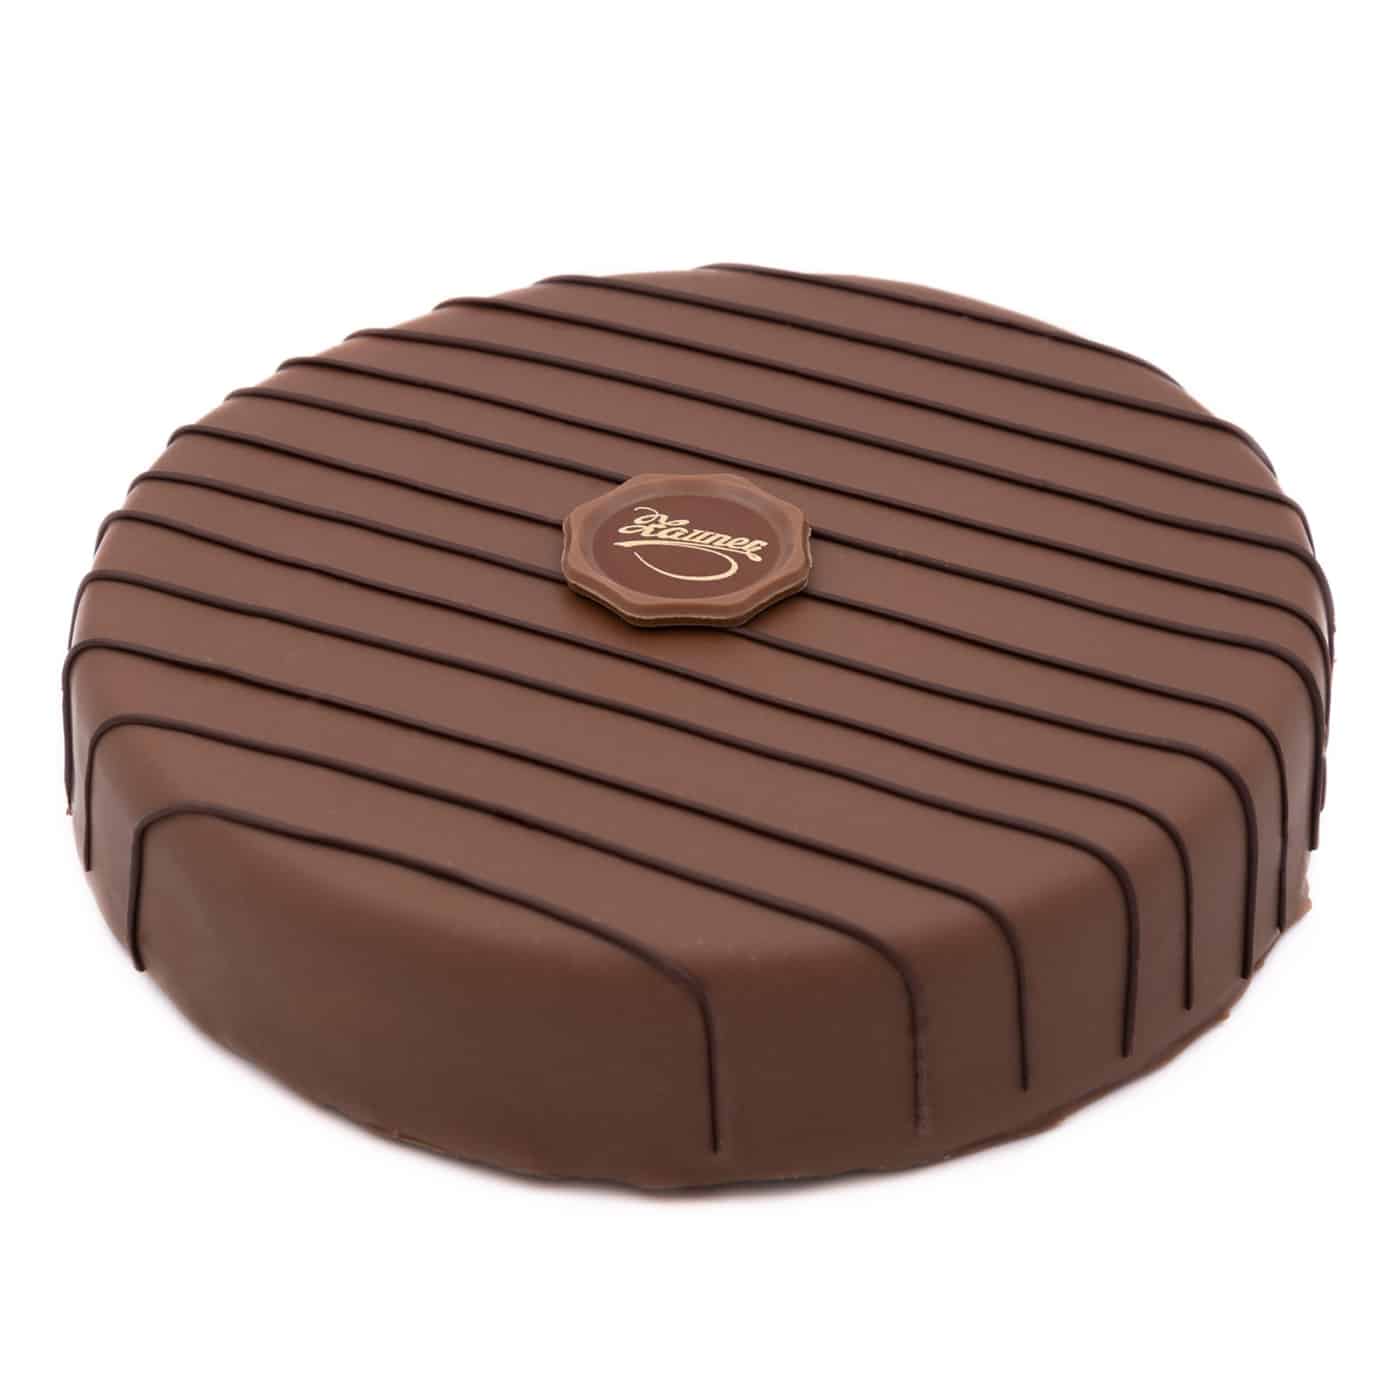 Cremechocolat-Trueffel-Torte unverpackt